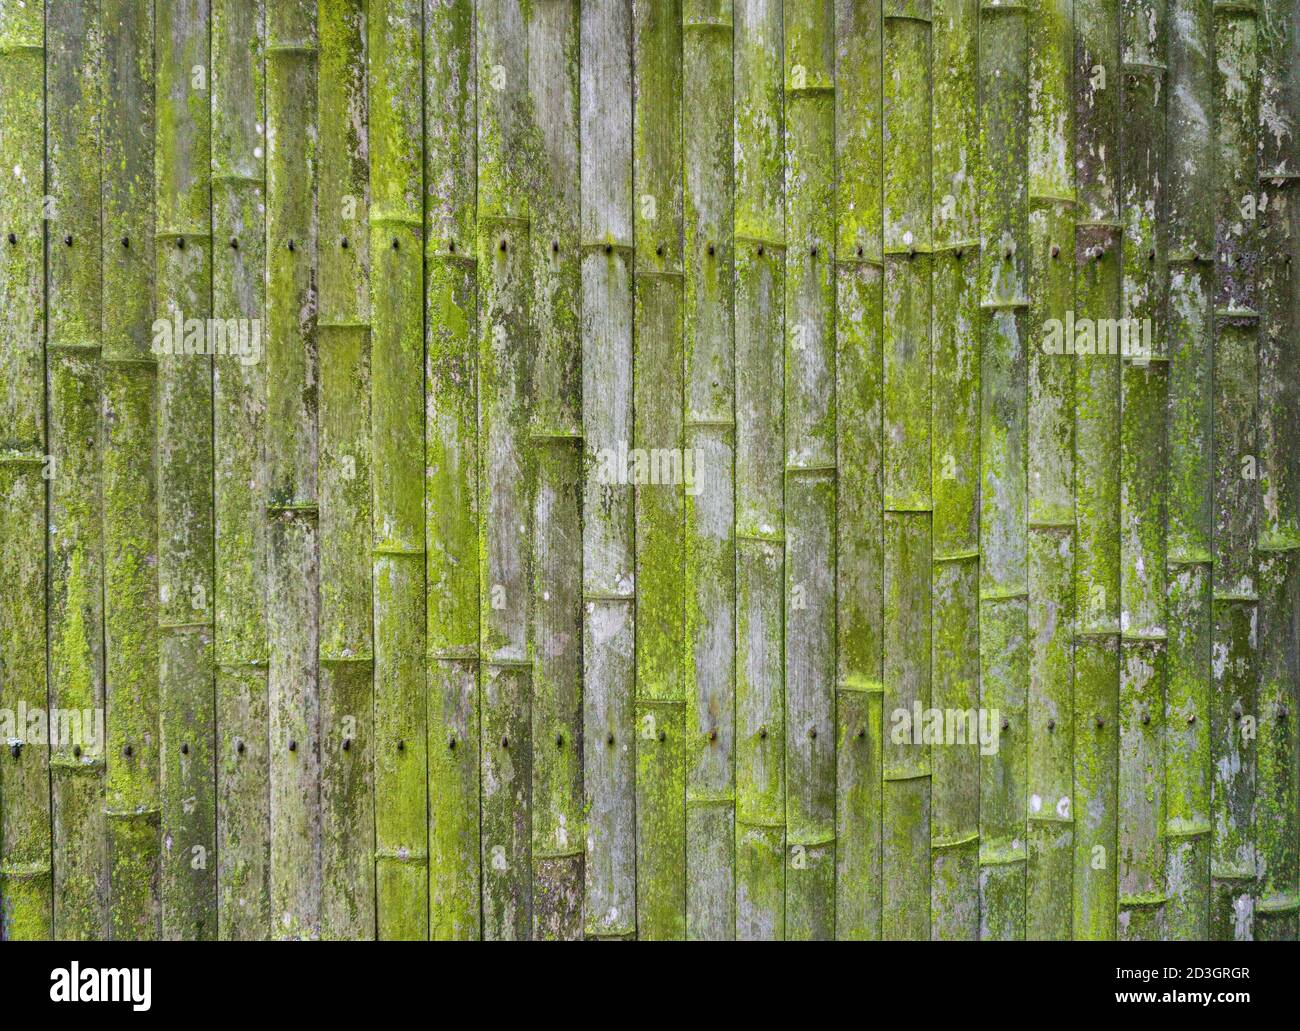 Alter Bambus Hintergrund. Wand oder Zaun aus altem Bambus. Textur und Textur von altem Holz mit Moos und Schimmel Stockfoto